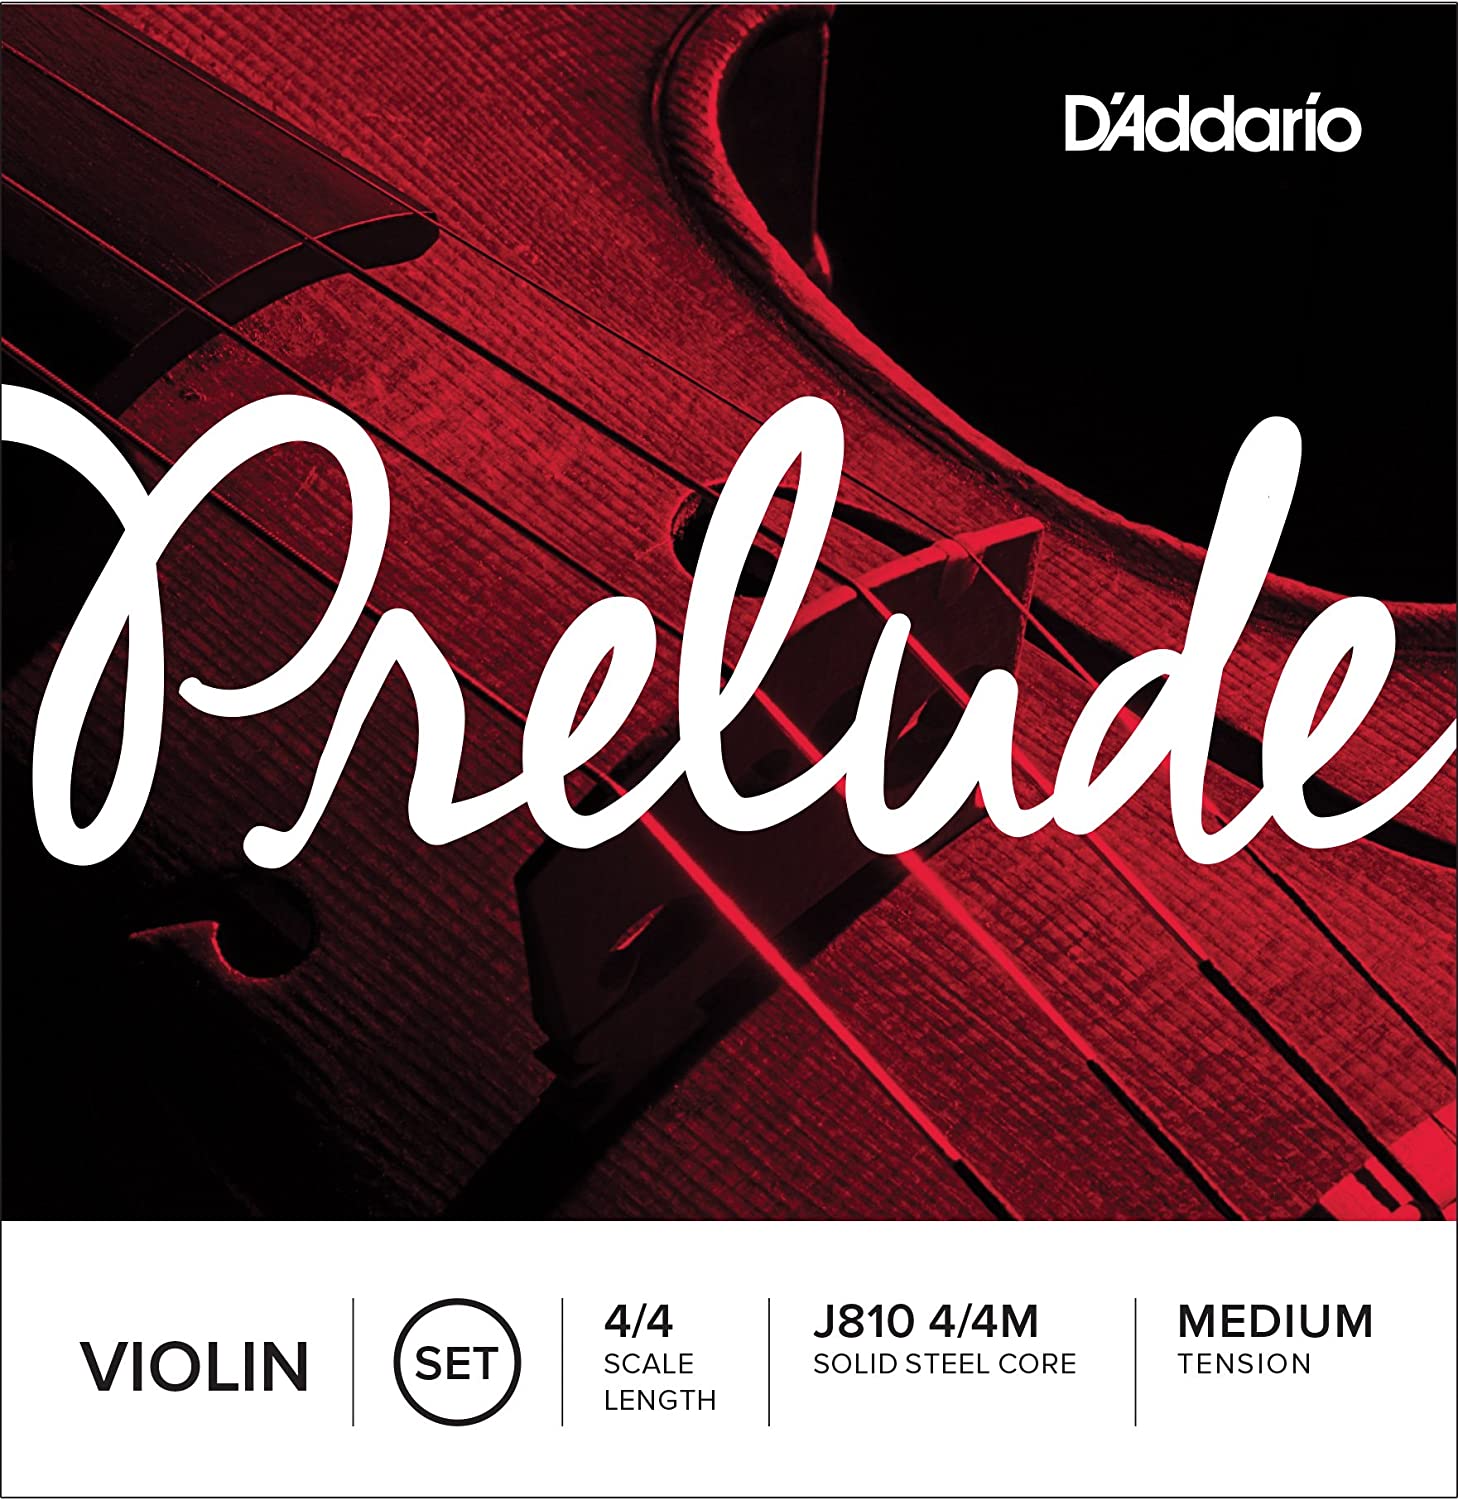 D’Addario Prelude Violin String Set, 4/4 Scale Medium Tension